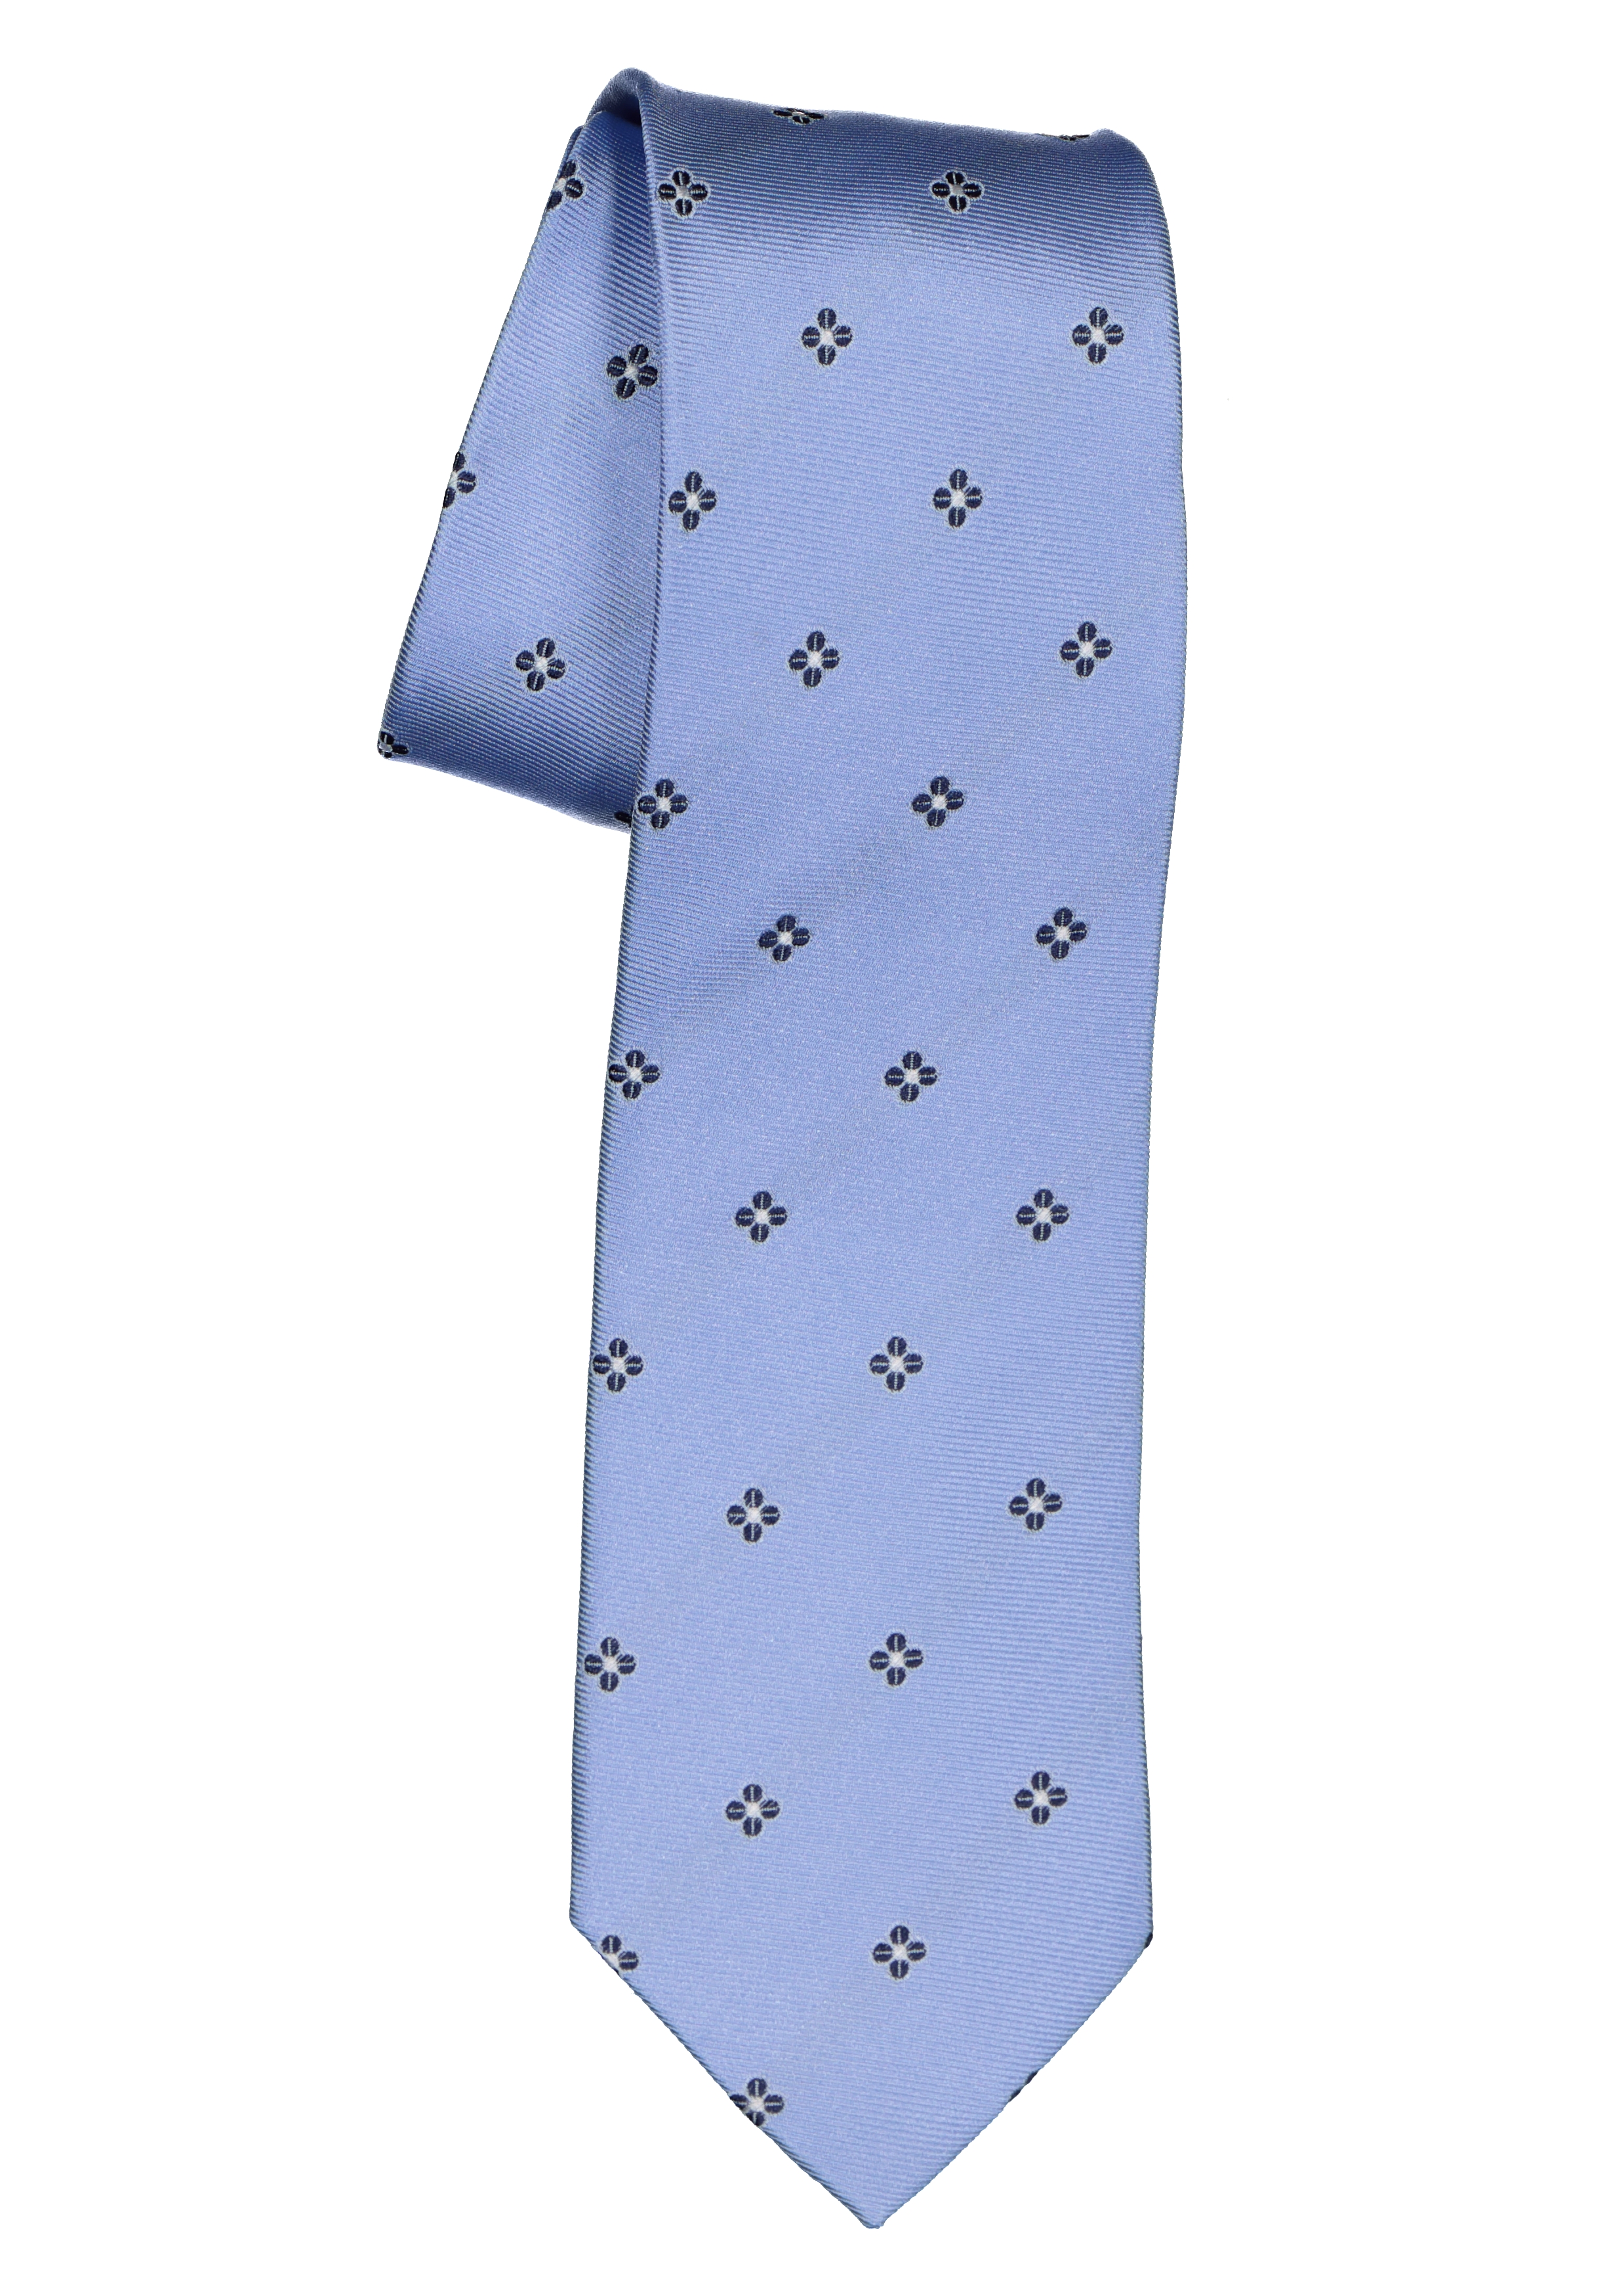 Michaelis  stropdas, zijde, lichtblauw met donkerblauw en wit dessin